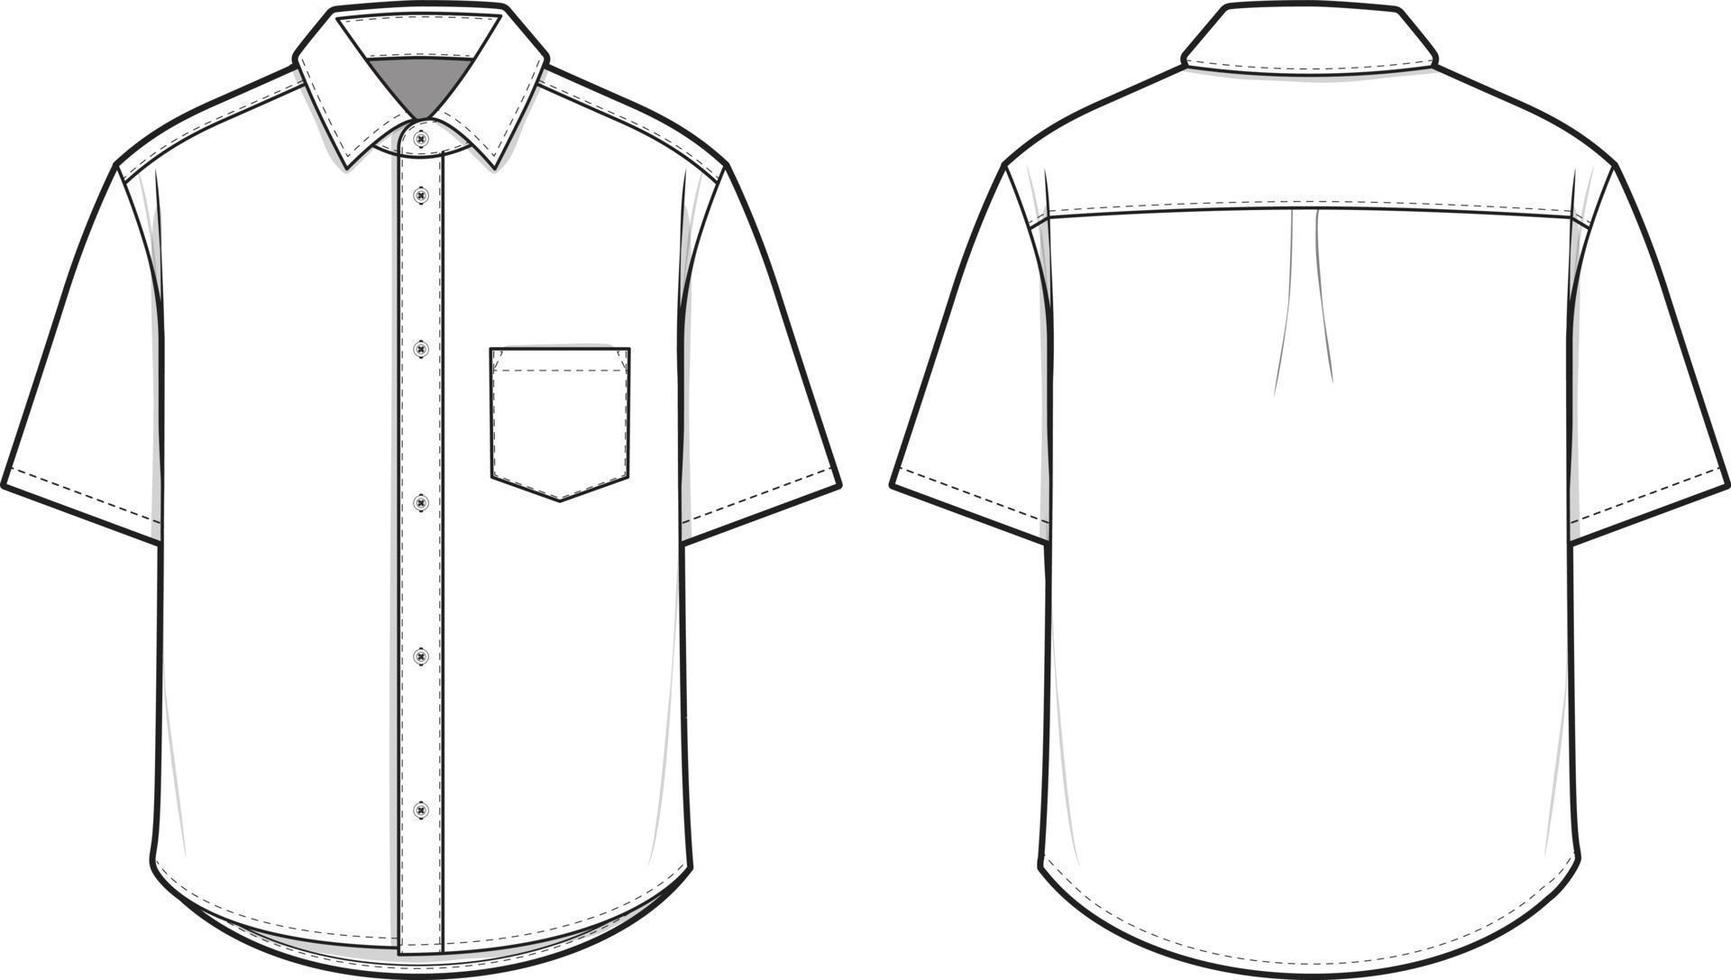 oxford camisa con botones de cuello manga corta ilustración de dibujo técnico plano plantilla de maqueta en blanco para diseño y paquetes tecnológicos cad vector